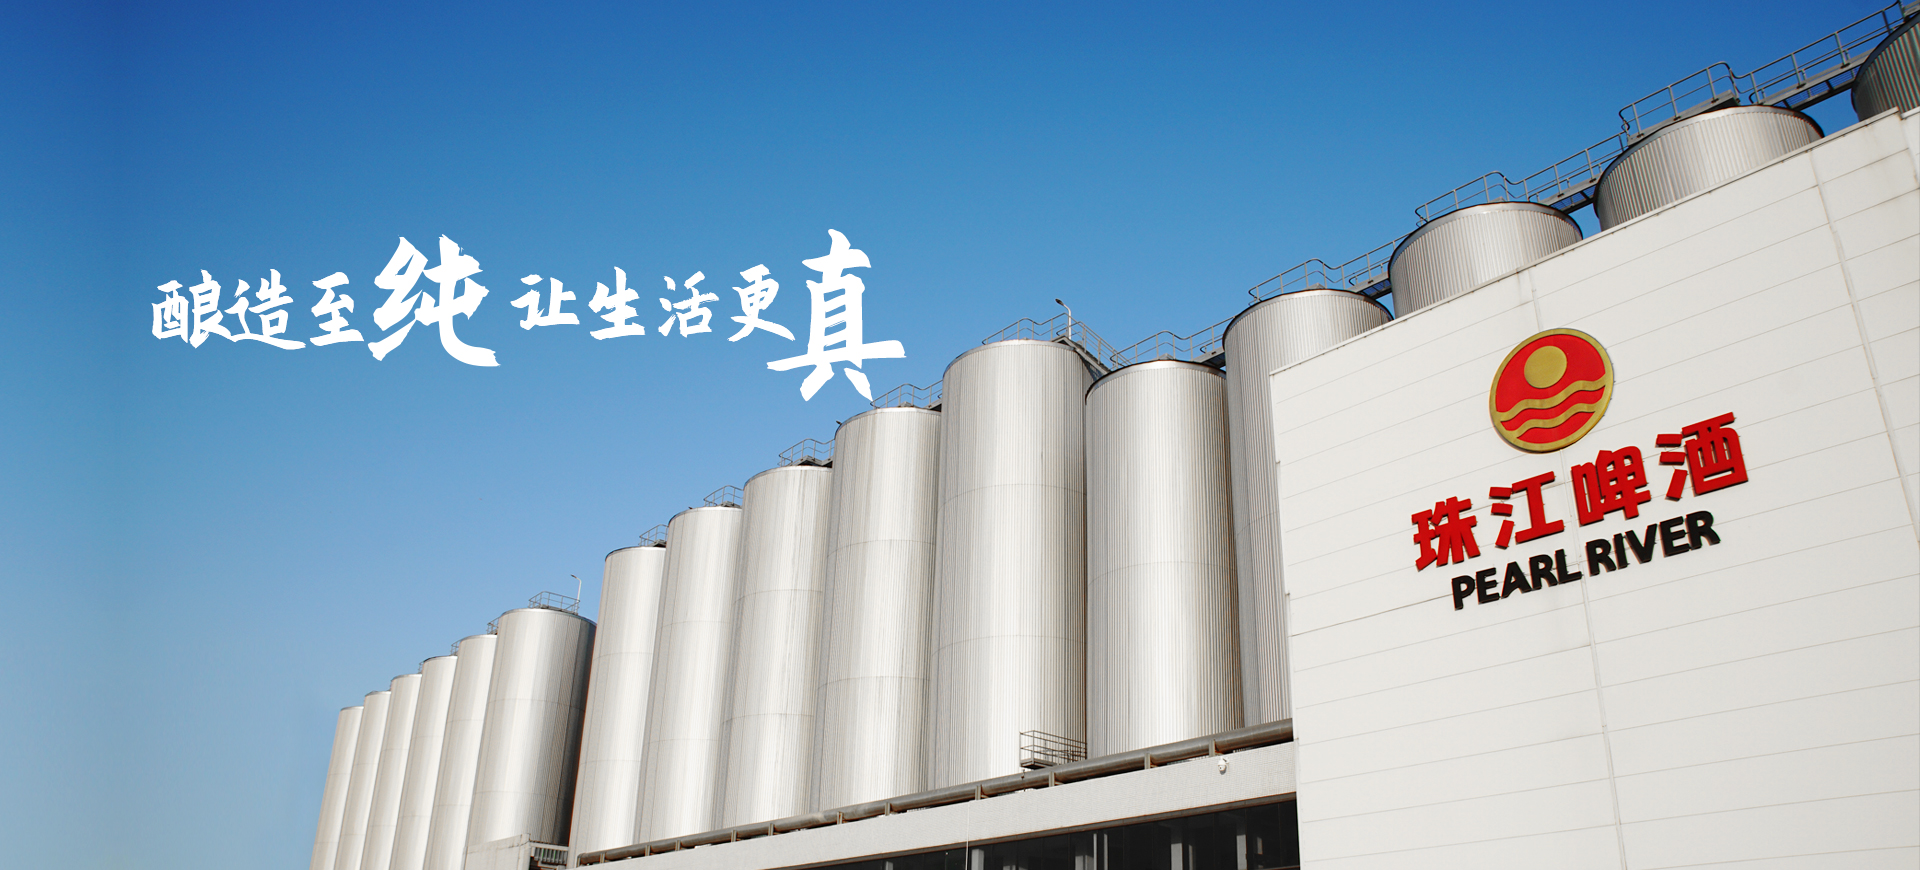 广州珠江啤酒电子招标商务平台